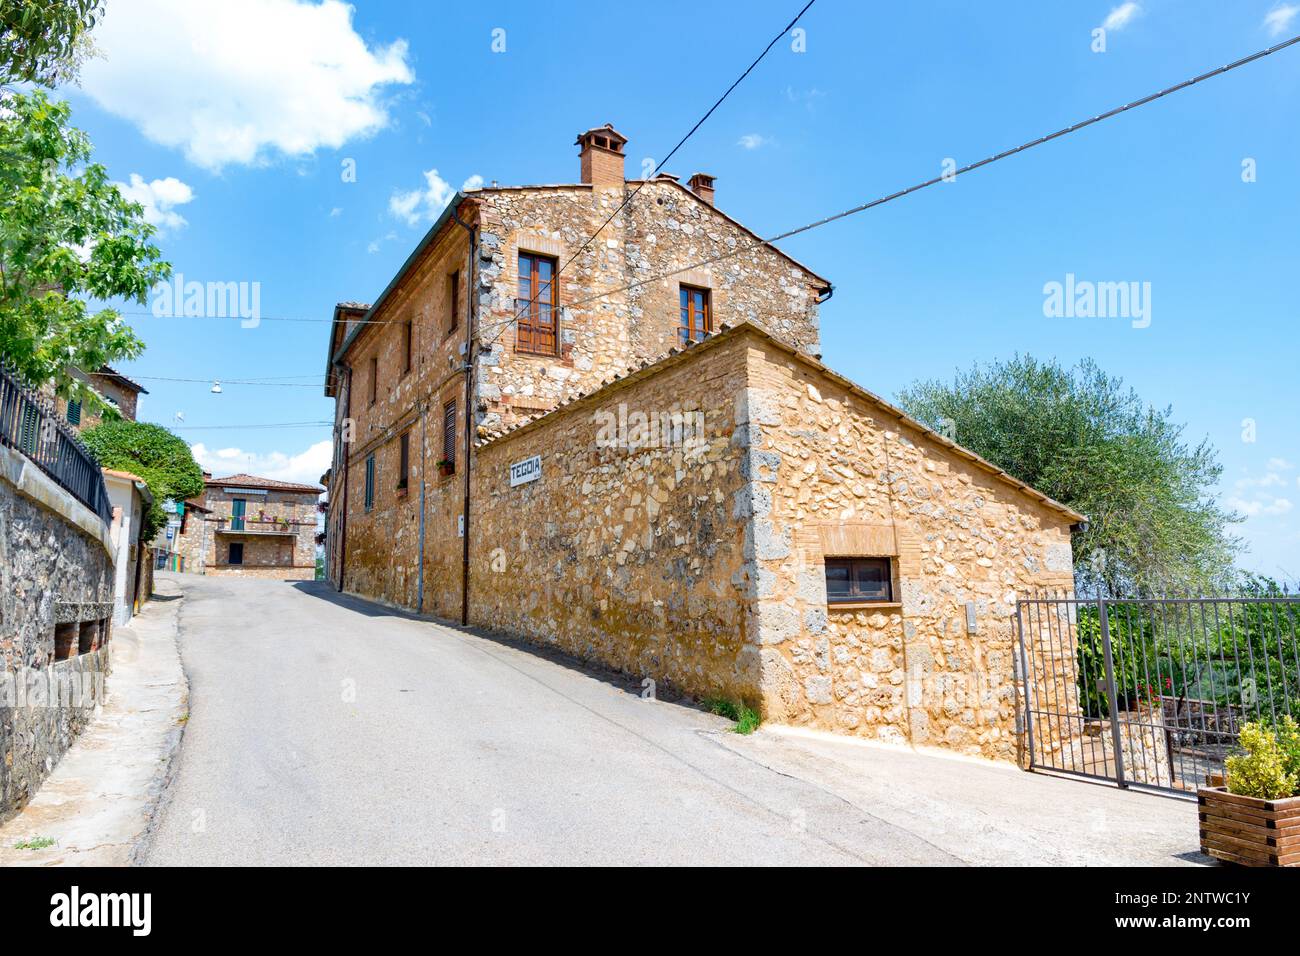 Tegoia est un petit village près de Sienne en Toscane, Italie Banque D'Images